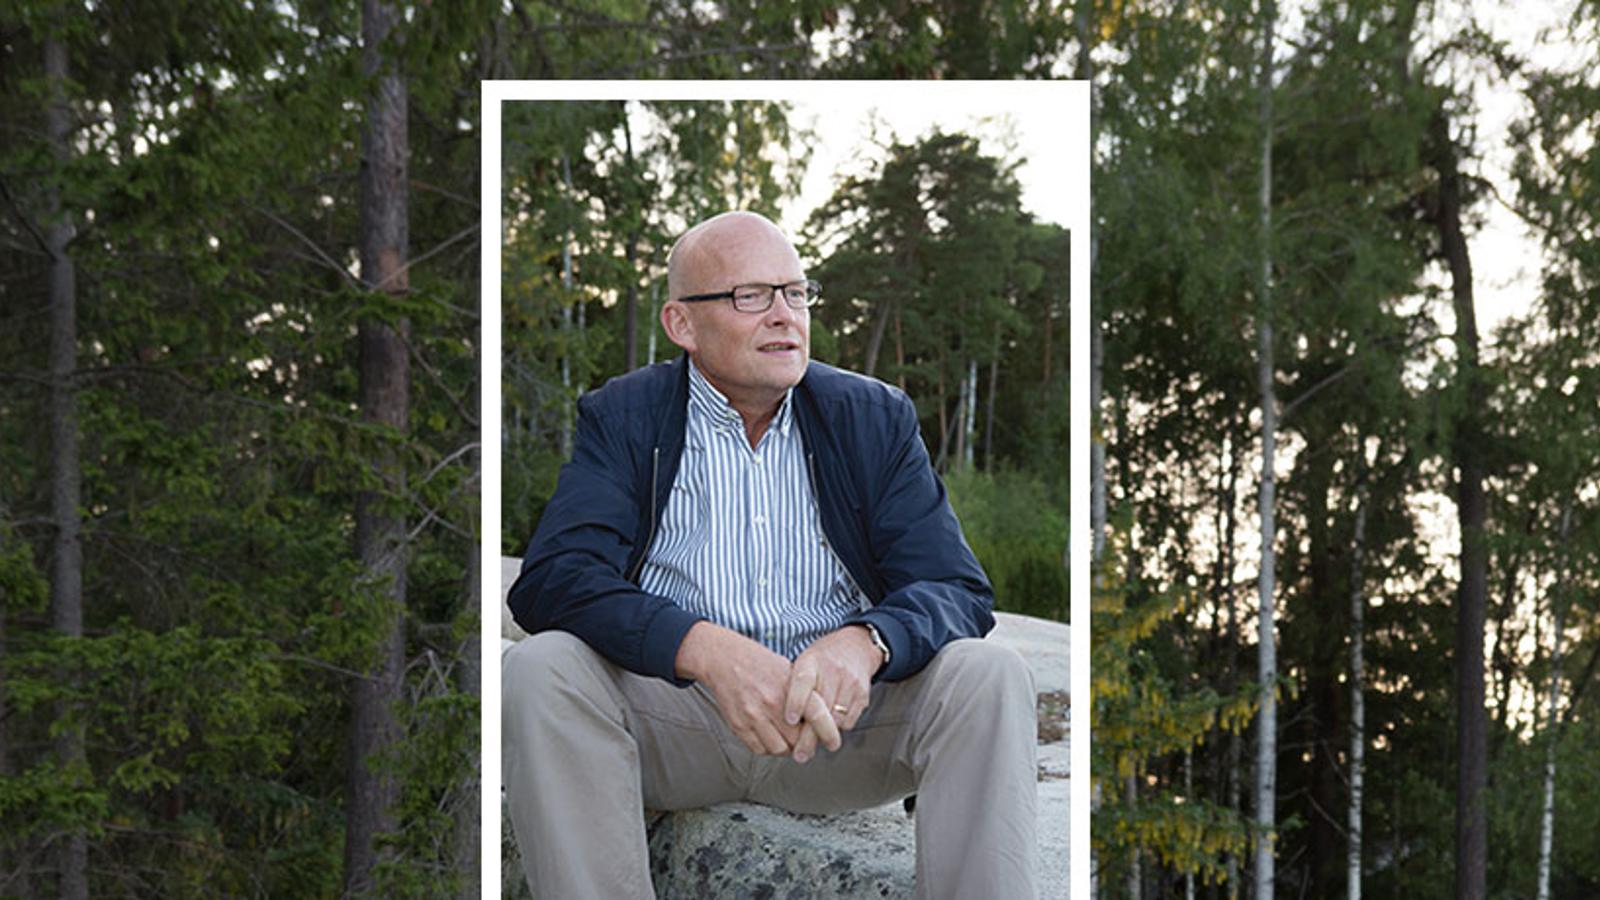 Porträttbild av Peter Ågren som sitter på en sten och tittar till höger om kameran. Bakgrunden består av träd i en skog.